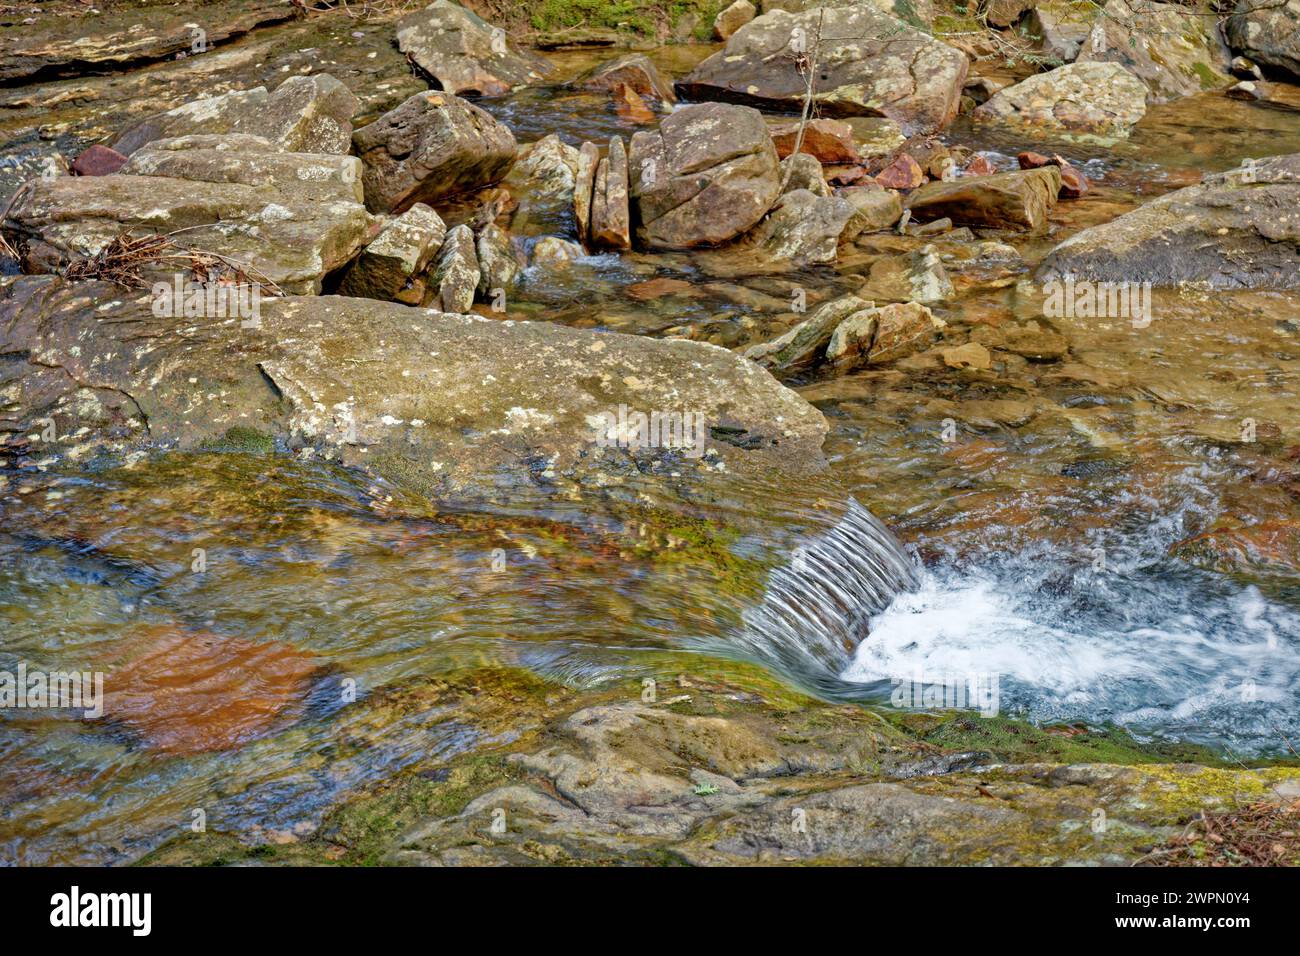 Una vista ravvicinata dell'acqua cristallina che scorre a valle sopra e intorno alle rocce colorate del torrente Foto Stock